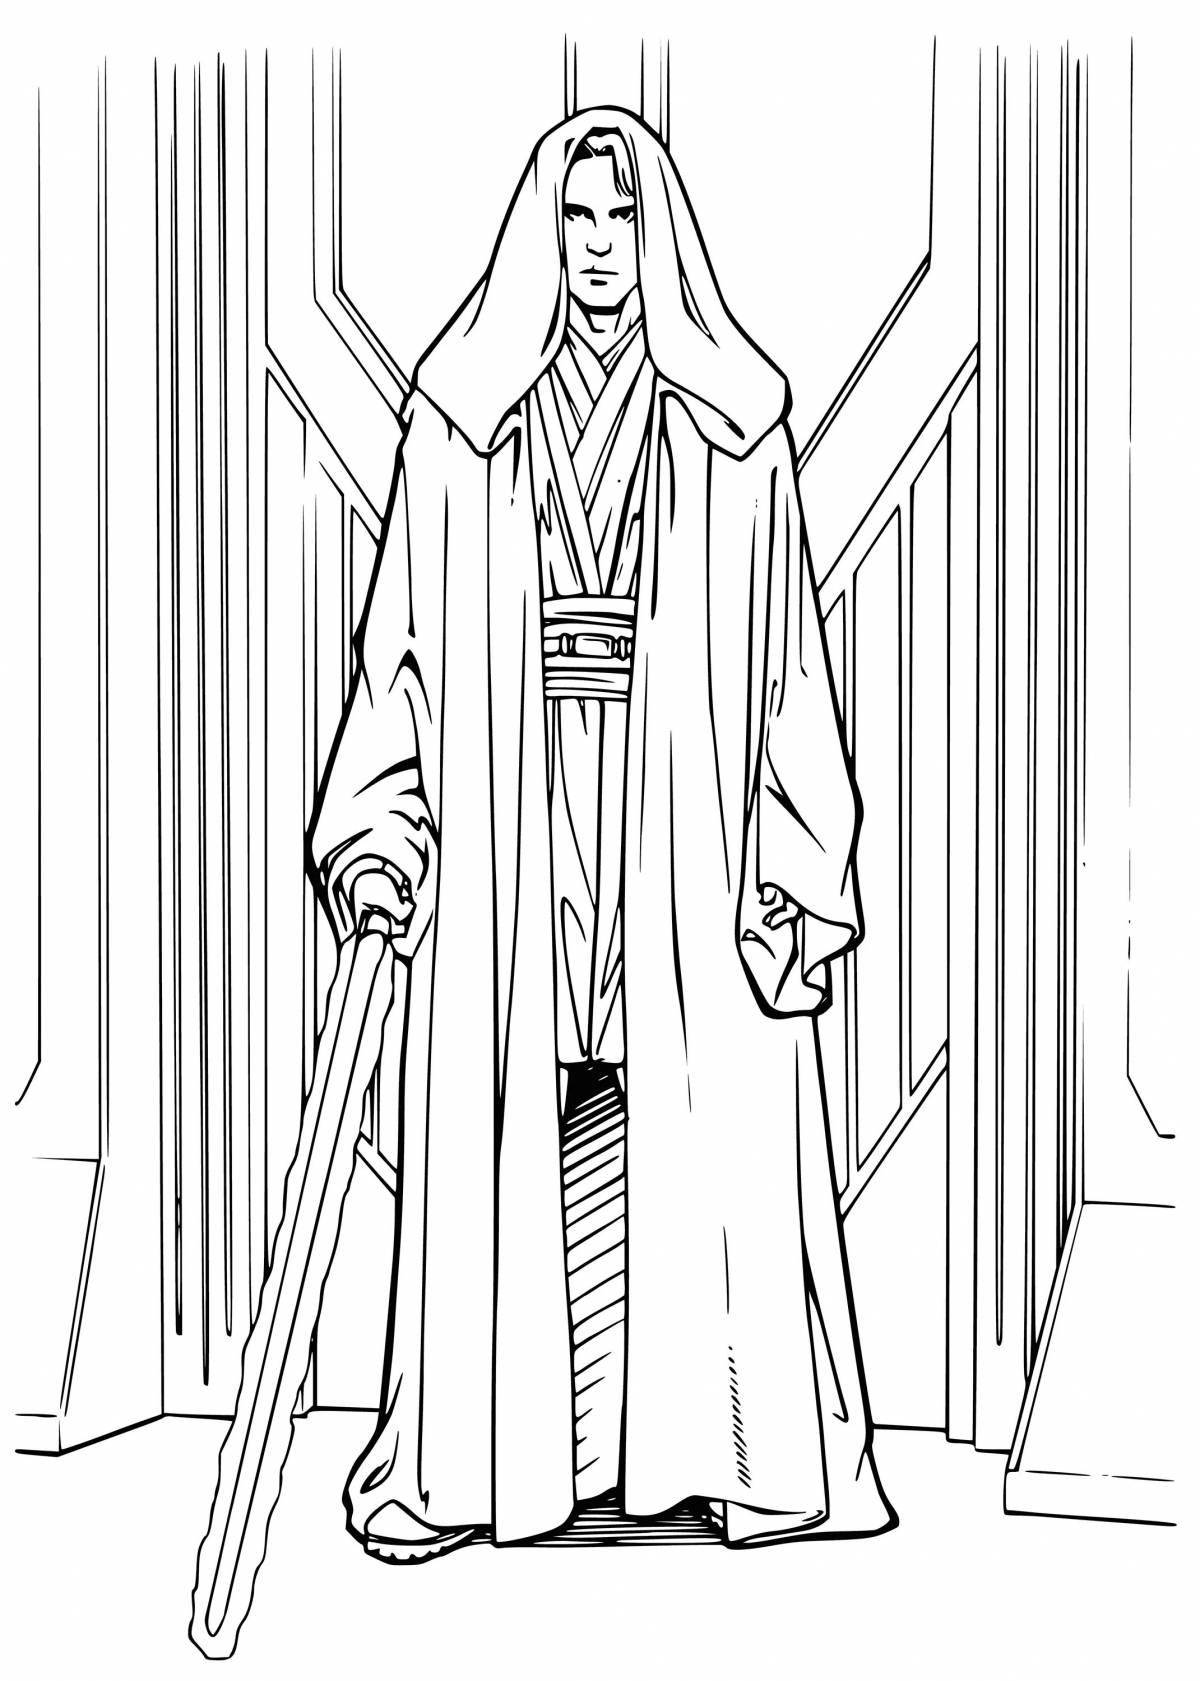 Dazzling Obi-Wan Kenobi coloring page